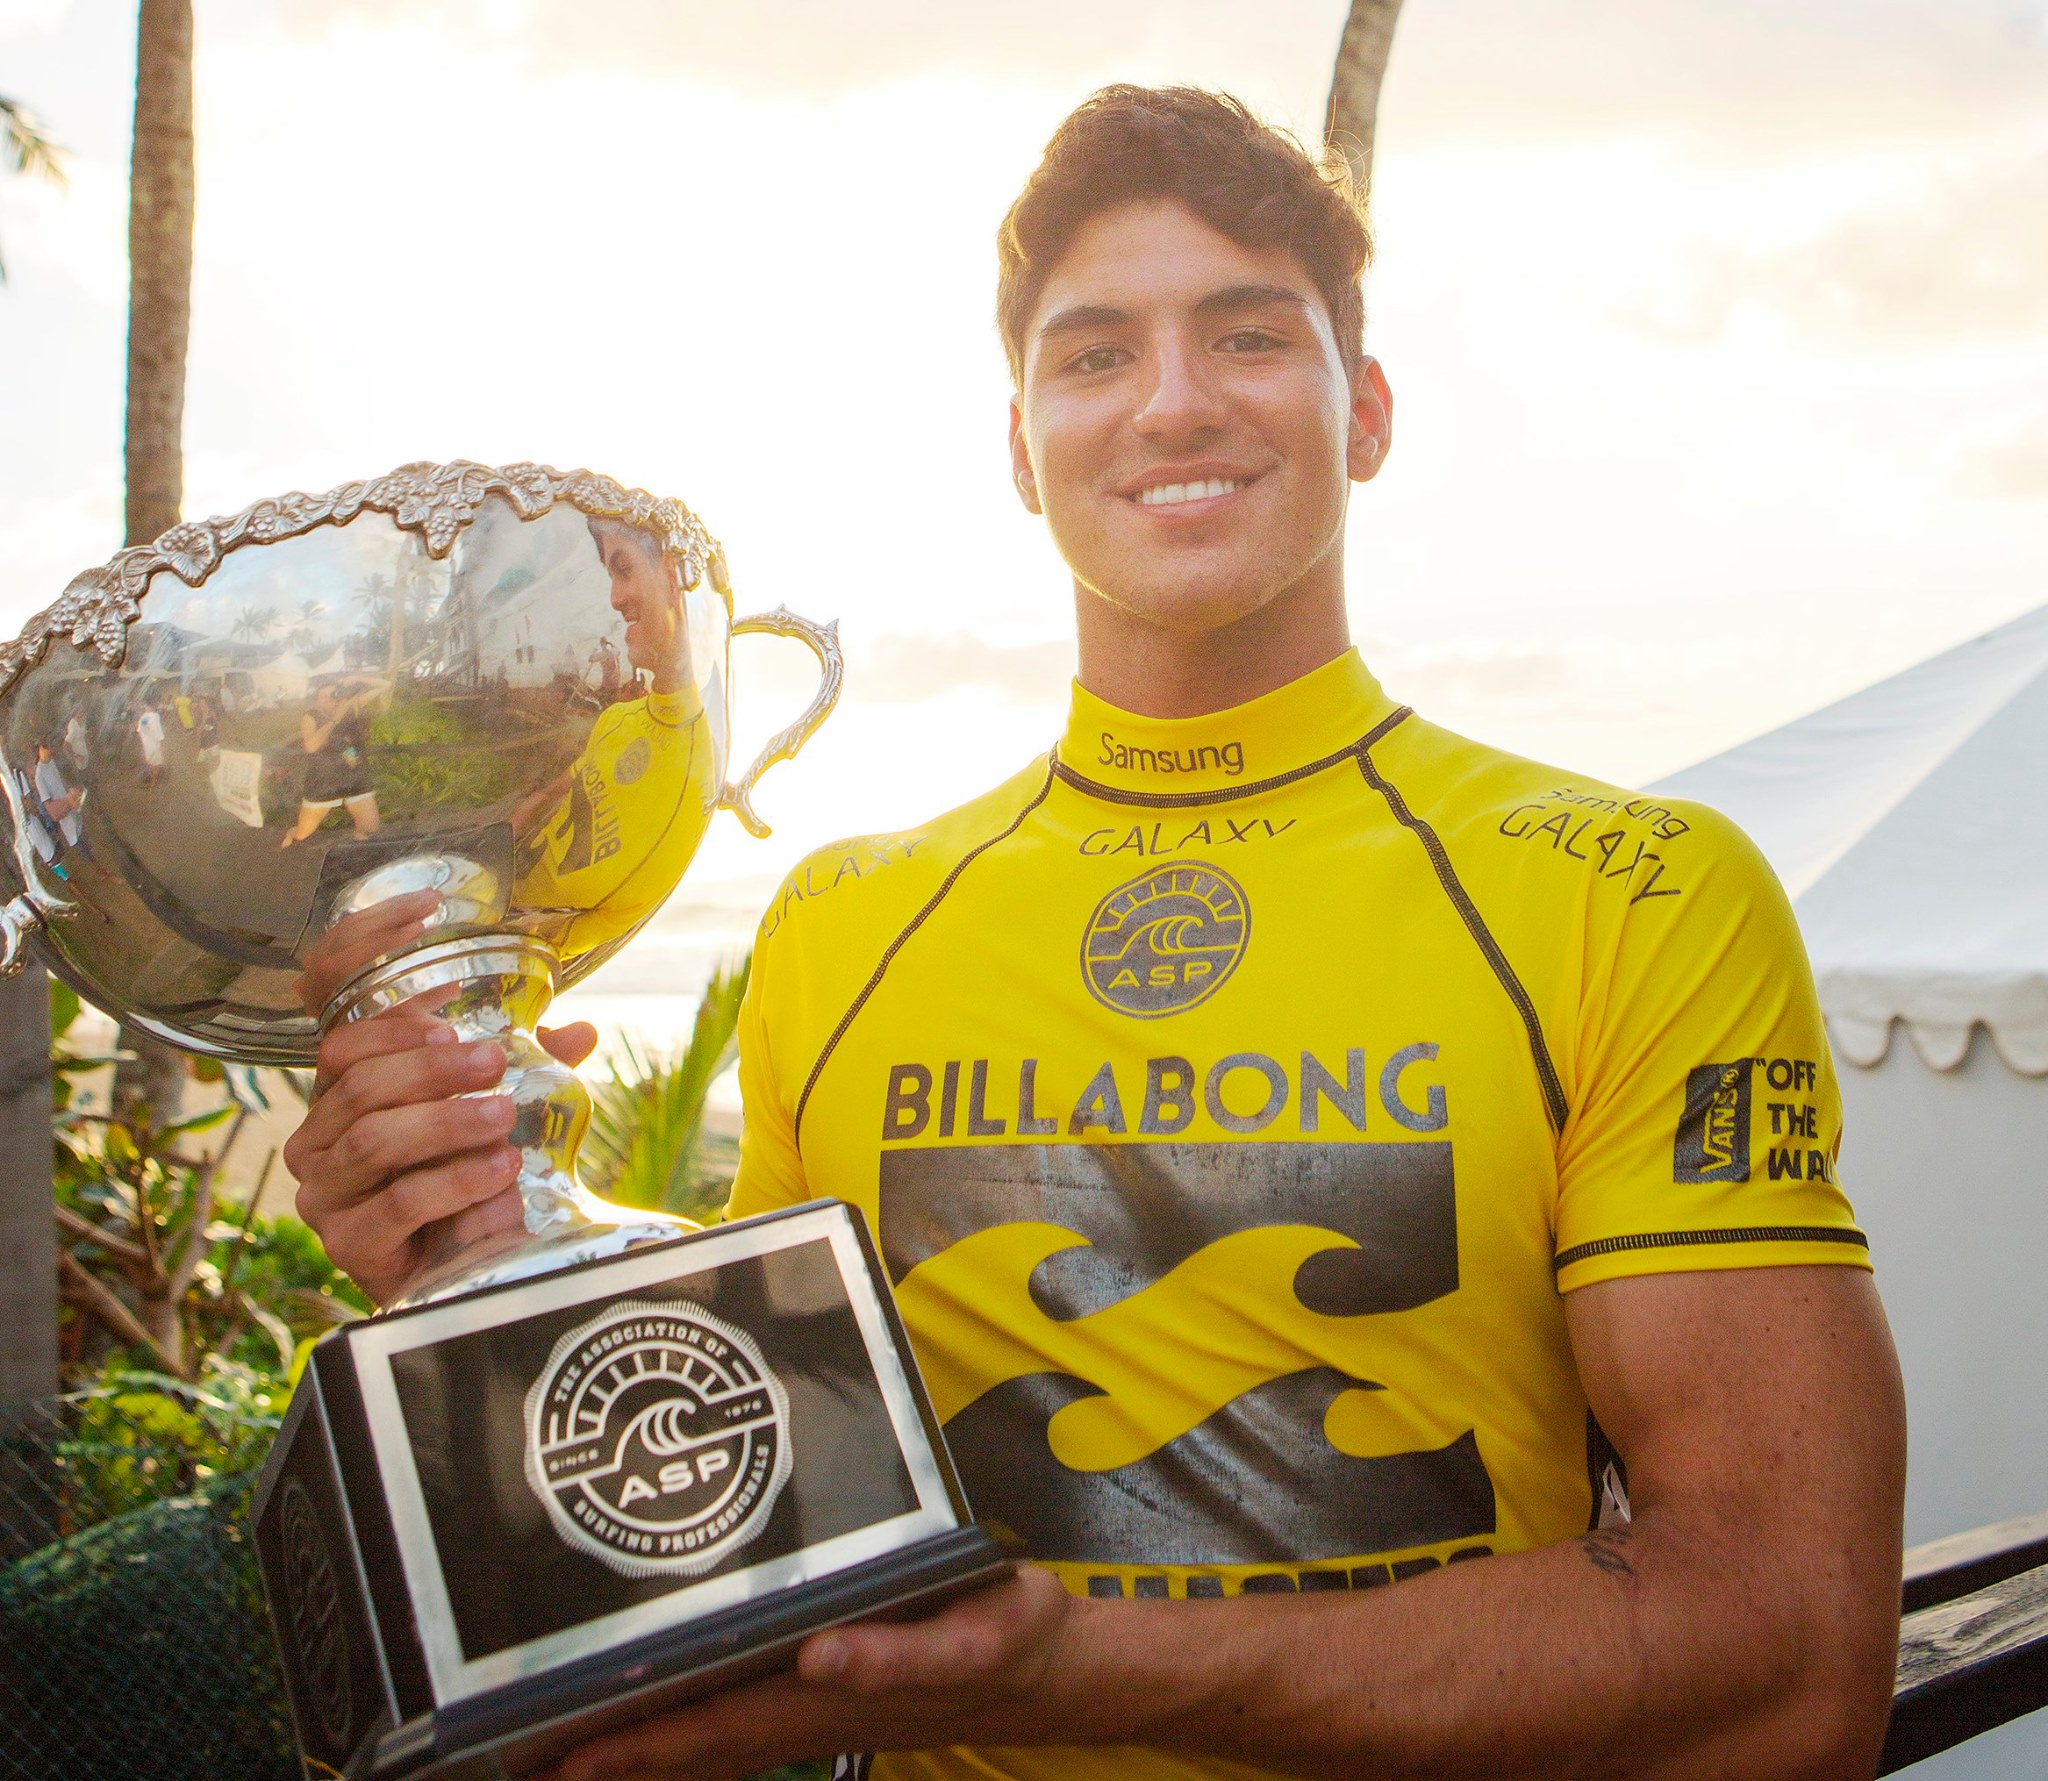 Surf International – Billabong Pipe Masters : Michel Bourez, 5ème au championnat du monde 2014, Gabriel Medina empoche le titre. MAJ